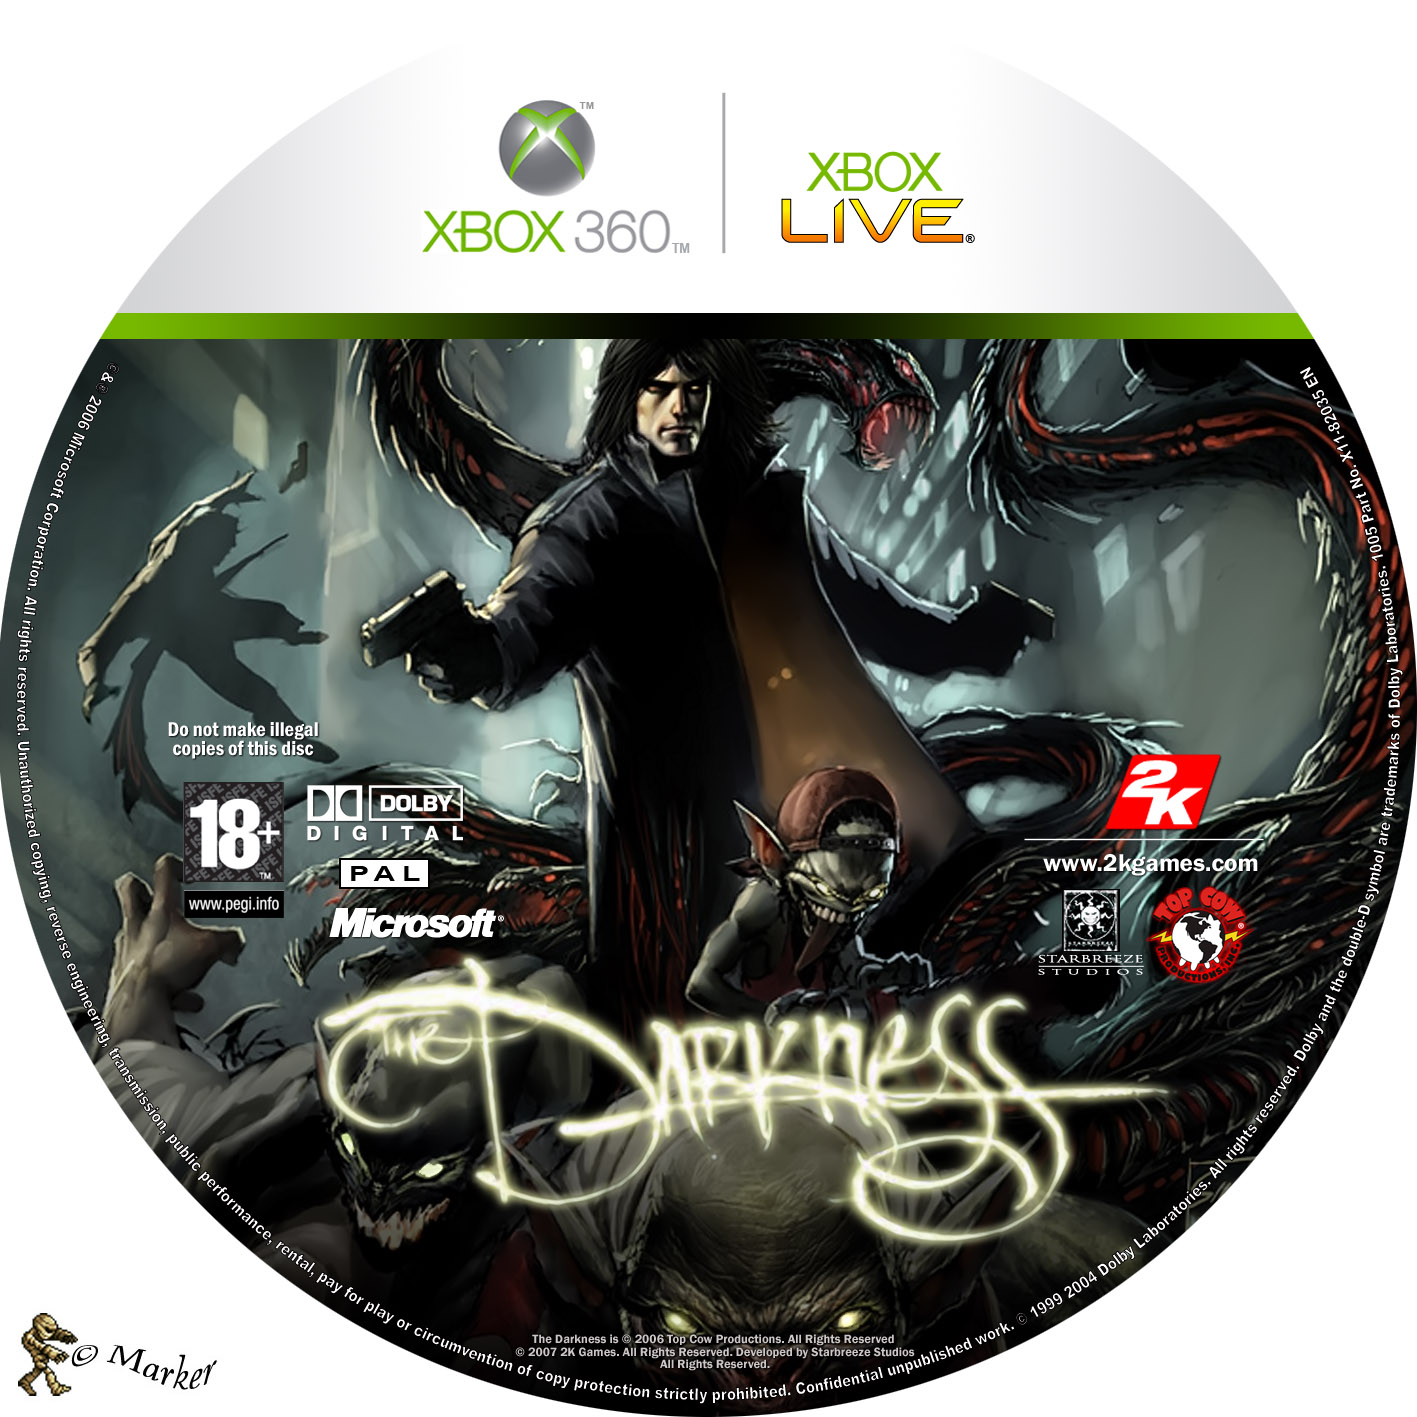 Игра xbox evil. Диск Darkness 2 Xbox 360. Darkness Xbox 360 диск. The Darkness 2 Xbox 360 обложка диска. Darkness 2 обложка Xbox 360.